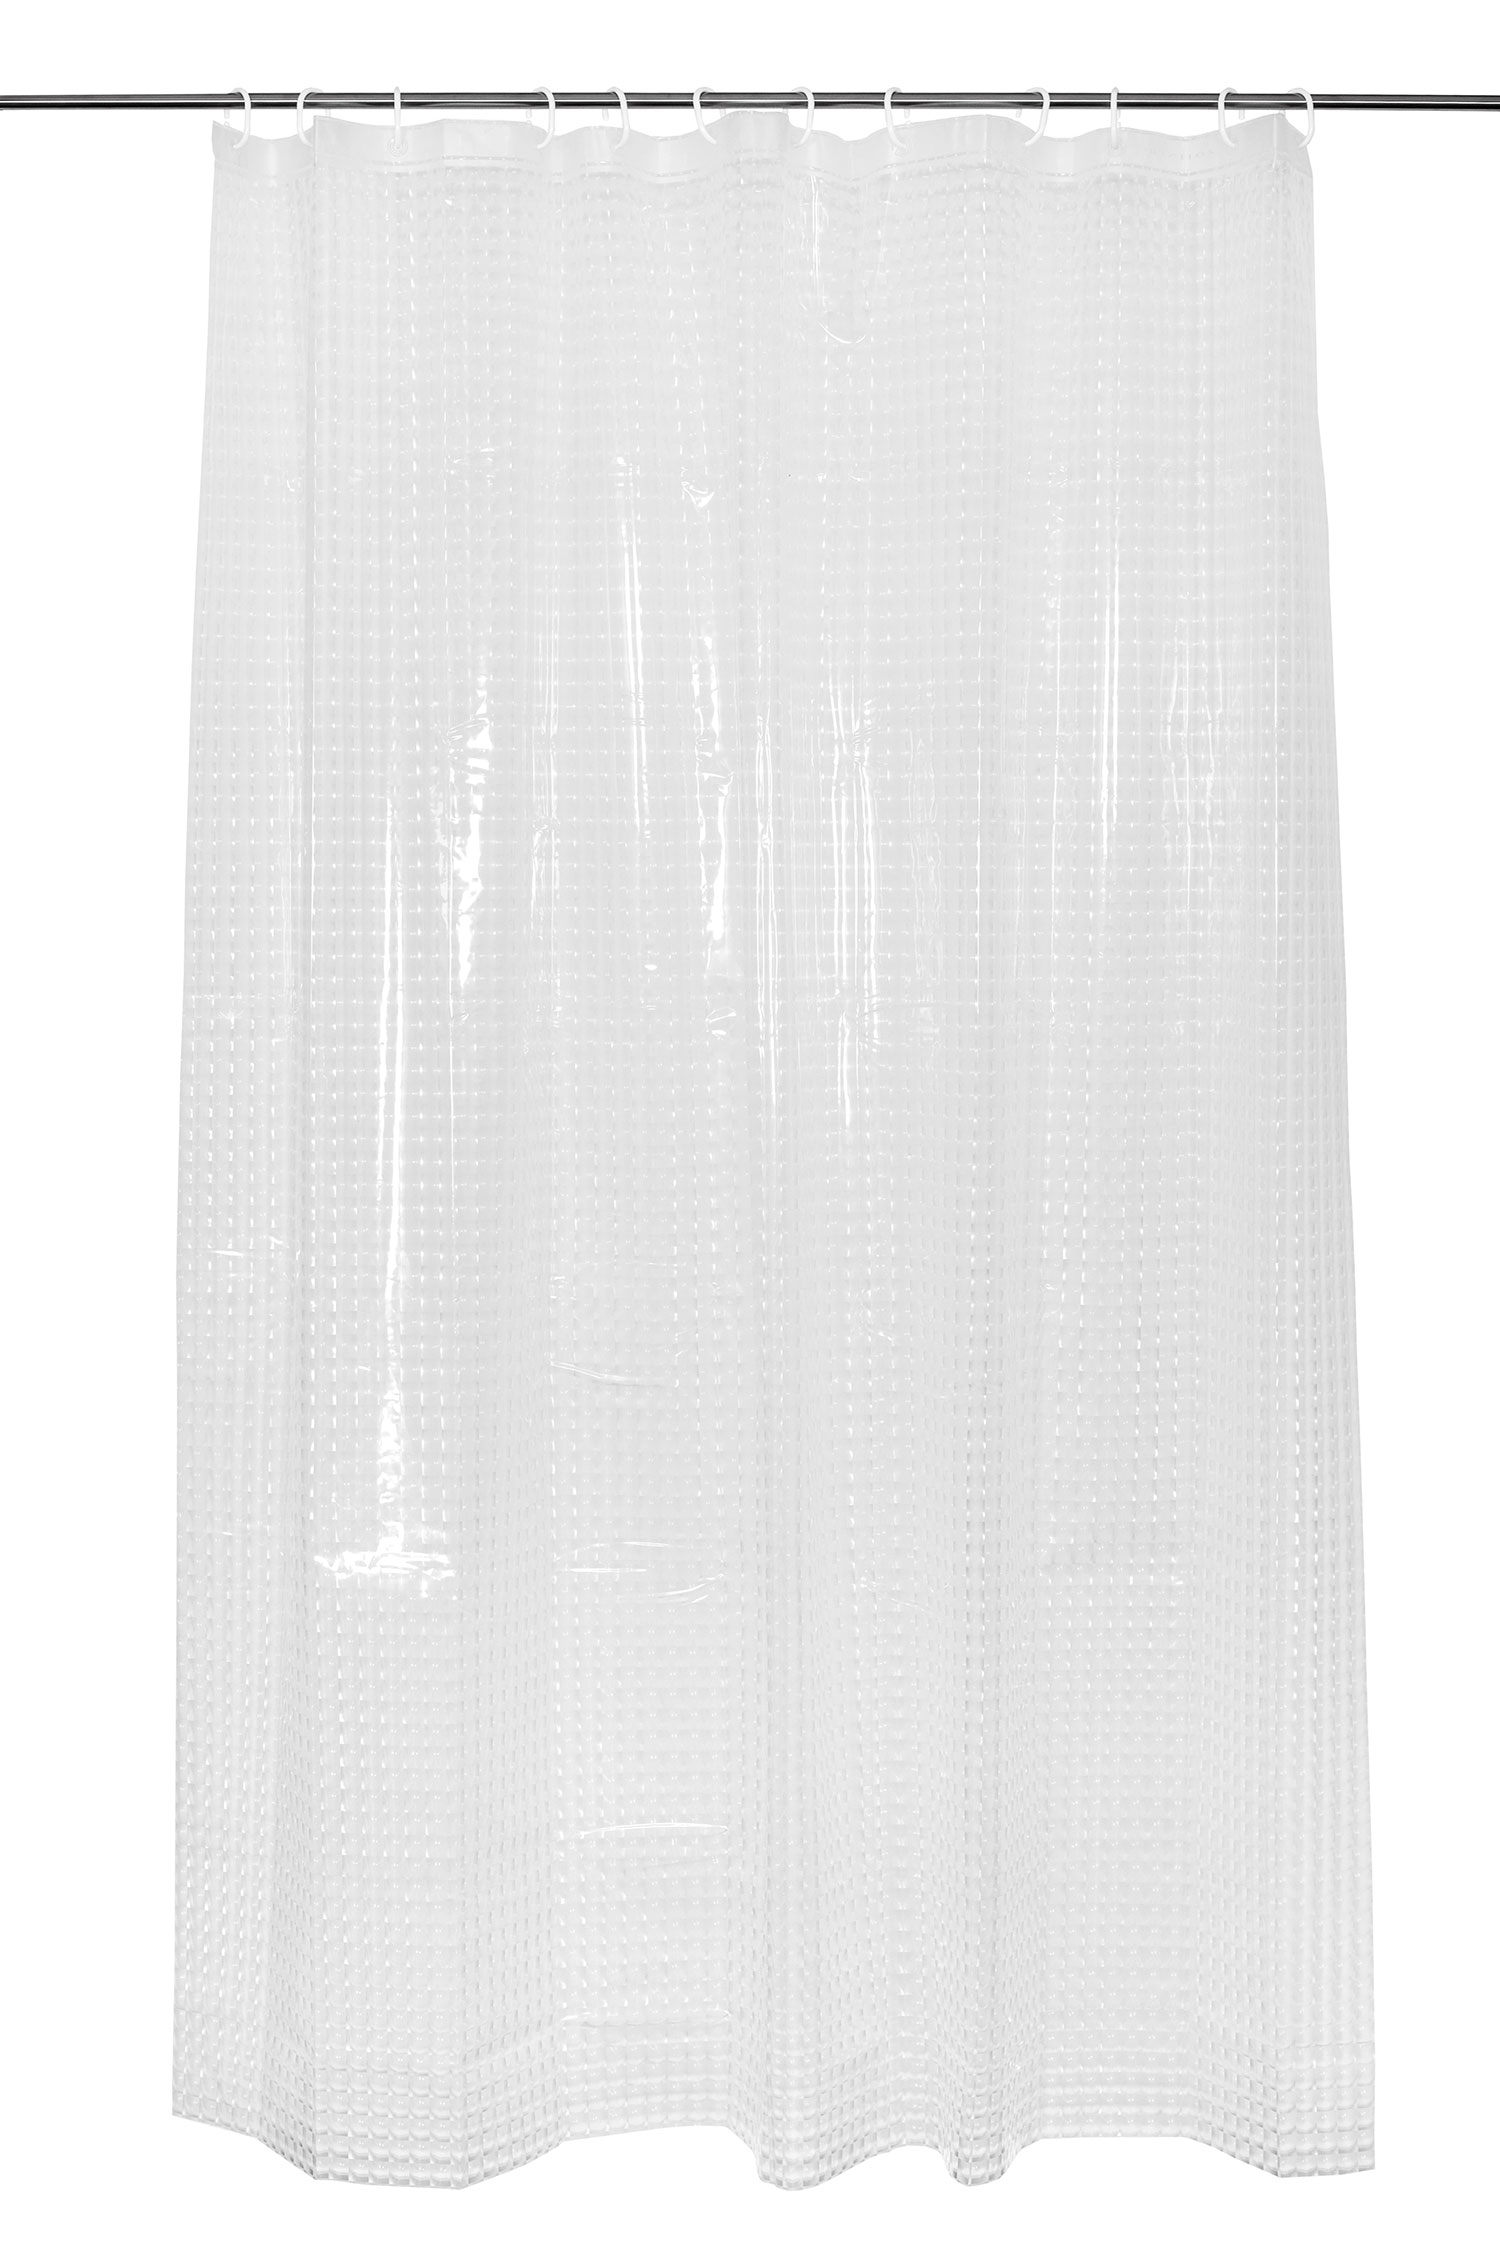 Duschvorhang, 180x200 cm, weiß